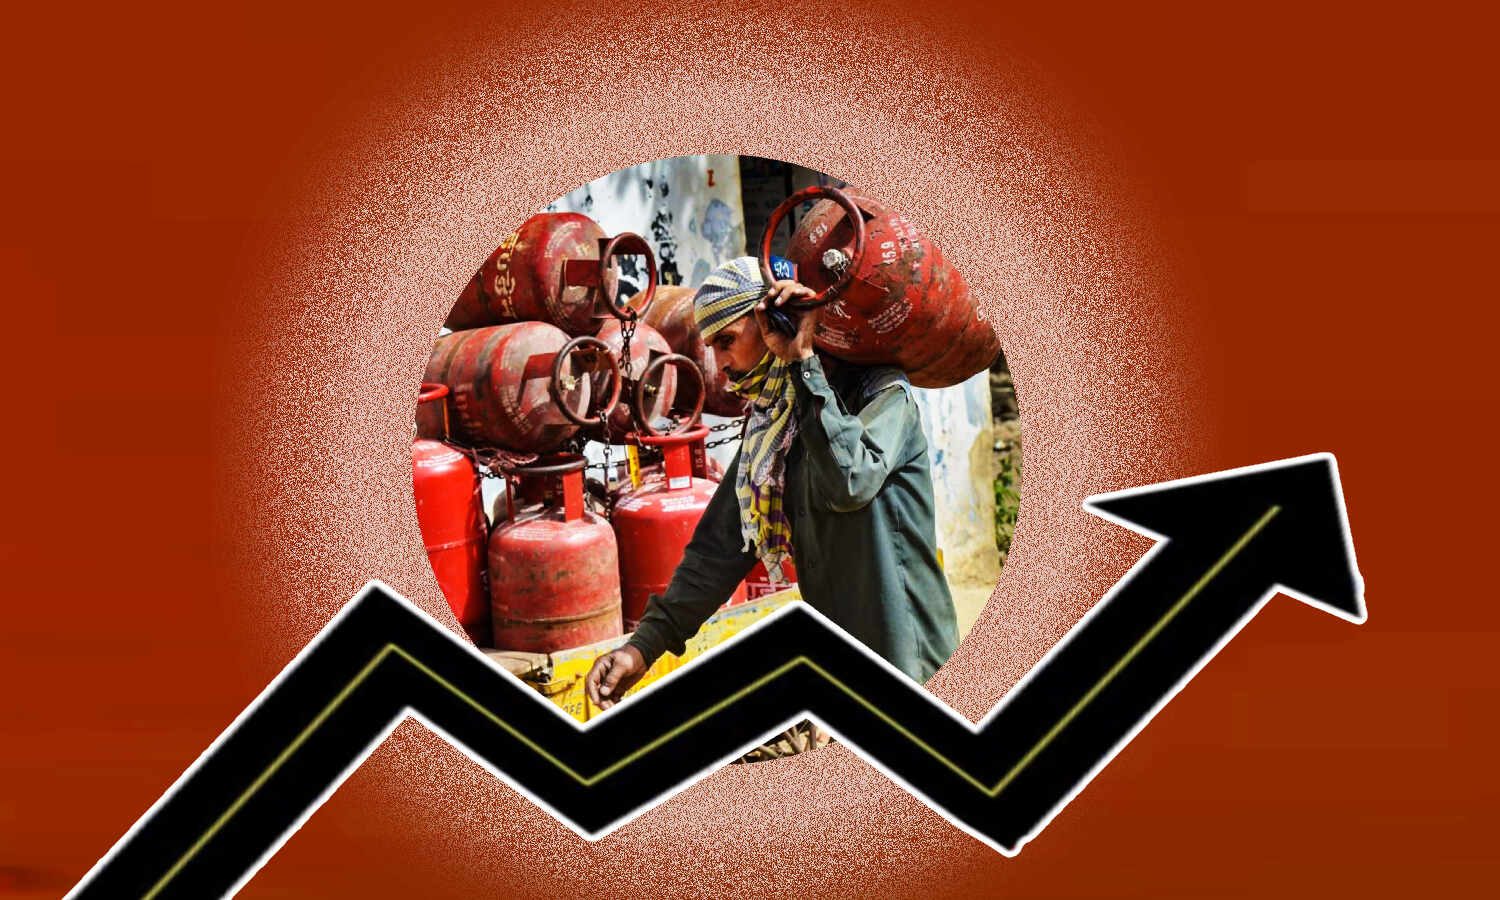 Petrol-Diesel Price Hike : भारत में LPG की कीमत दुनिया में सबसे ऊंची, पेट्रोल की लागत के मामले में तीसरे नंबर पर- रिपोर्ट